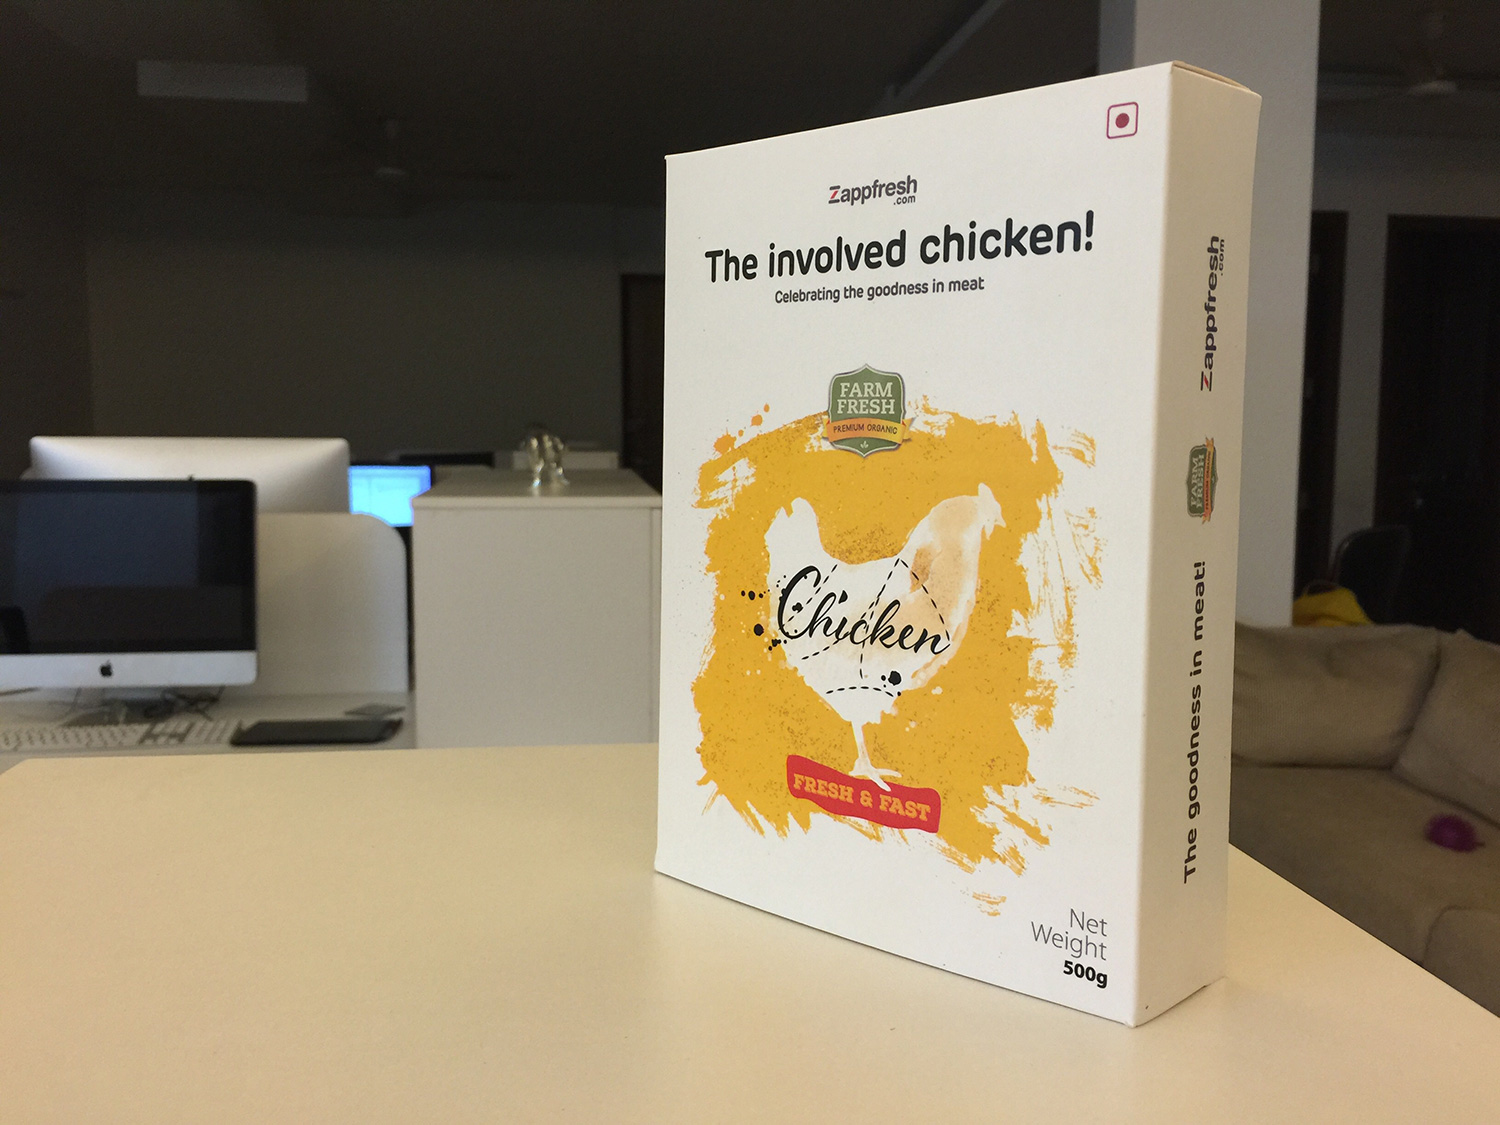 Zappfresh Chicken packaging